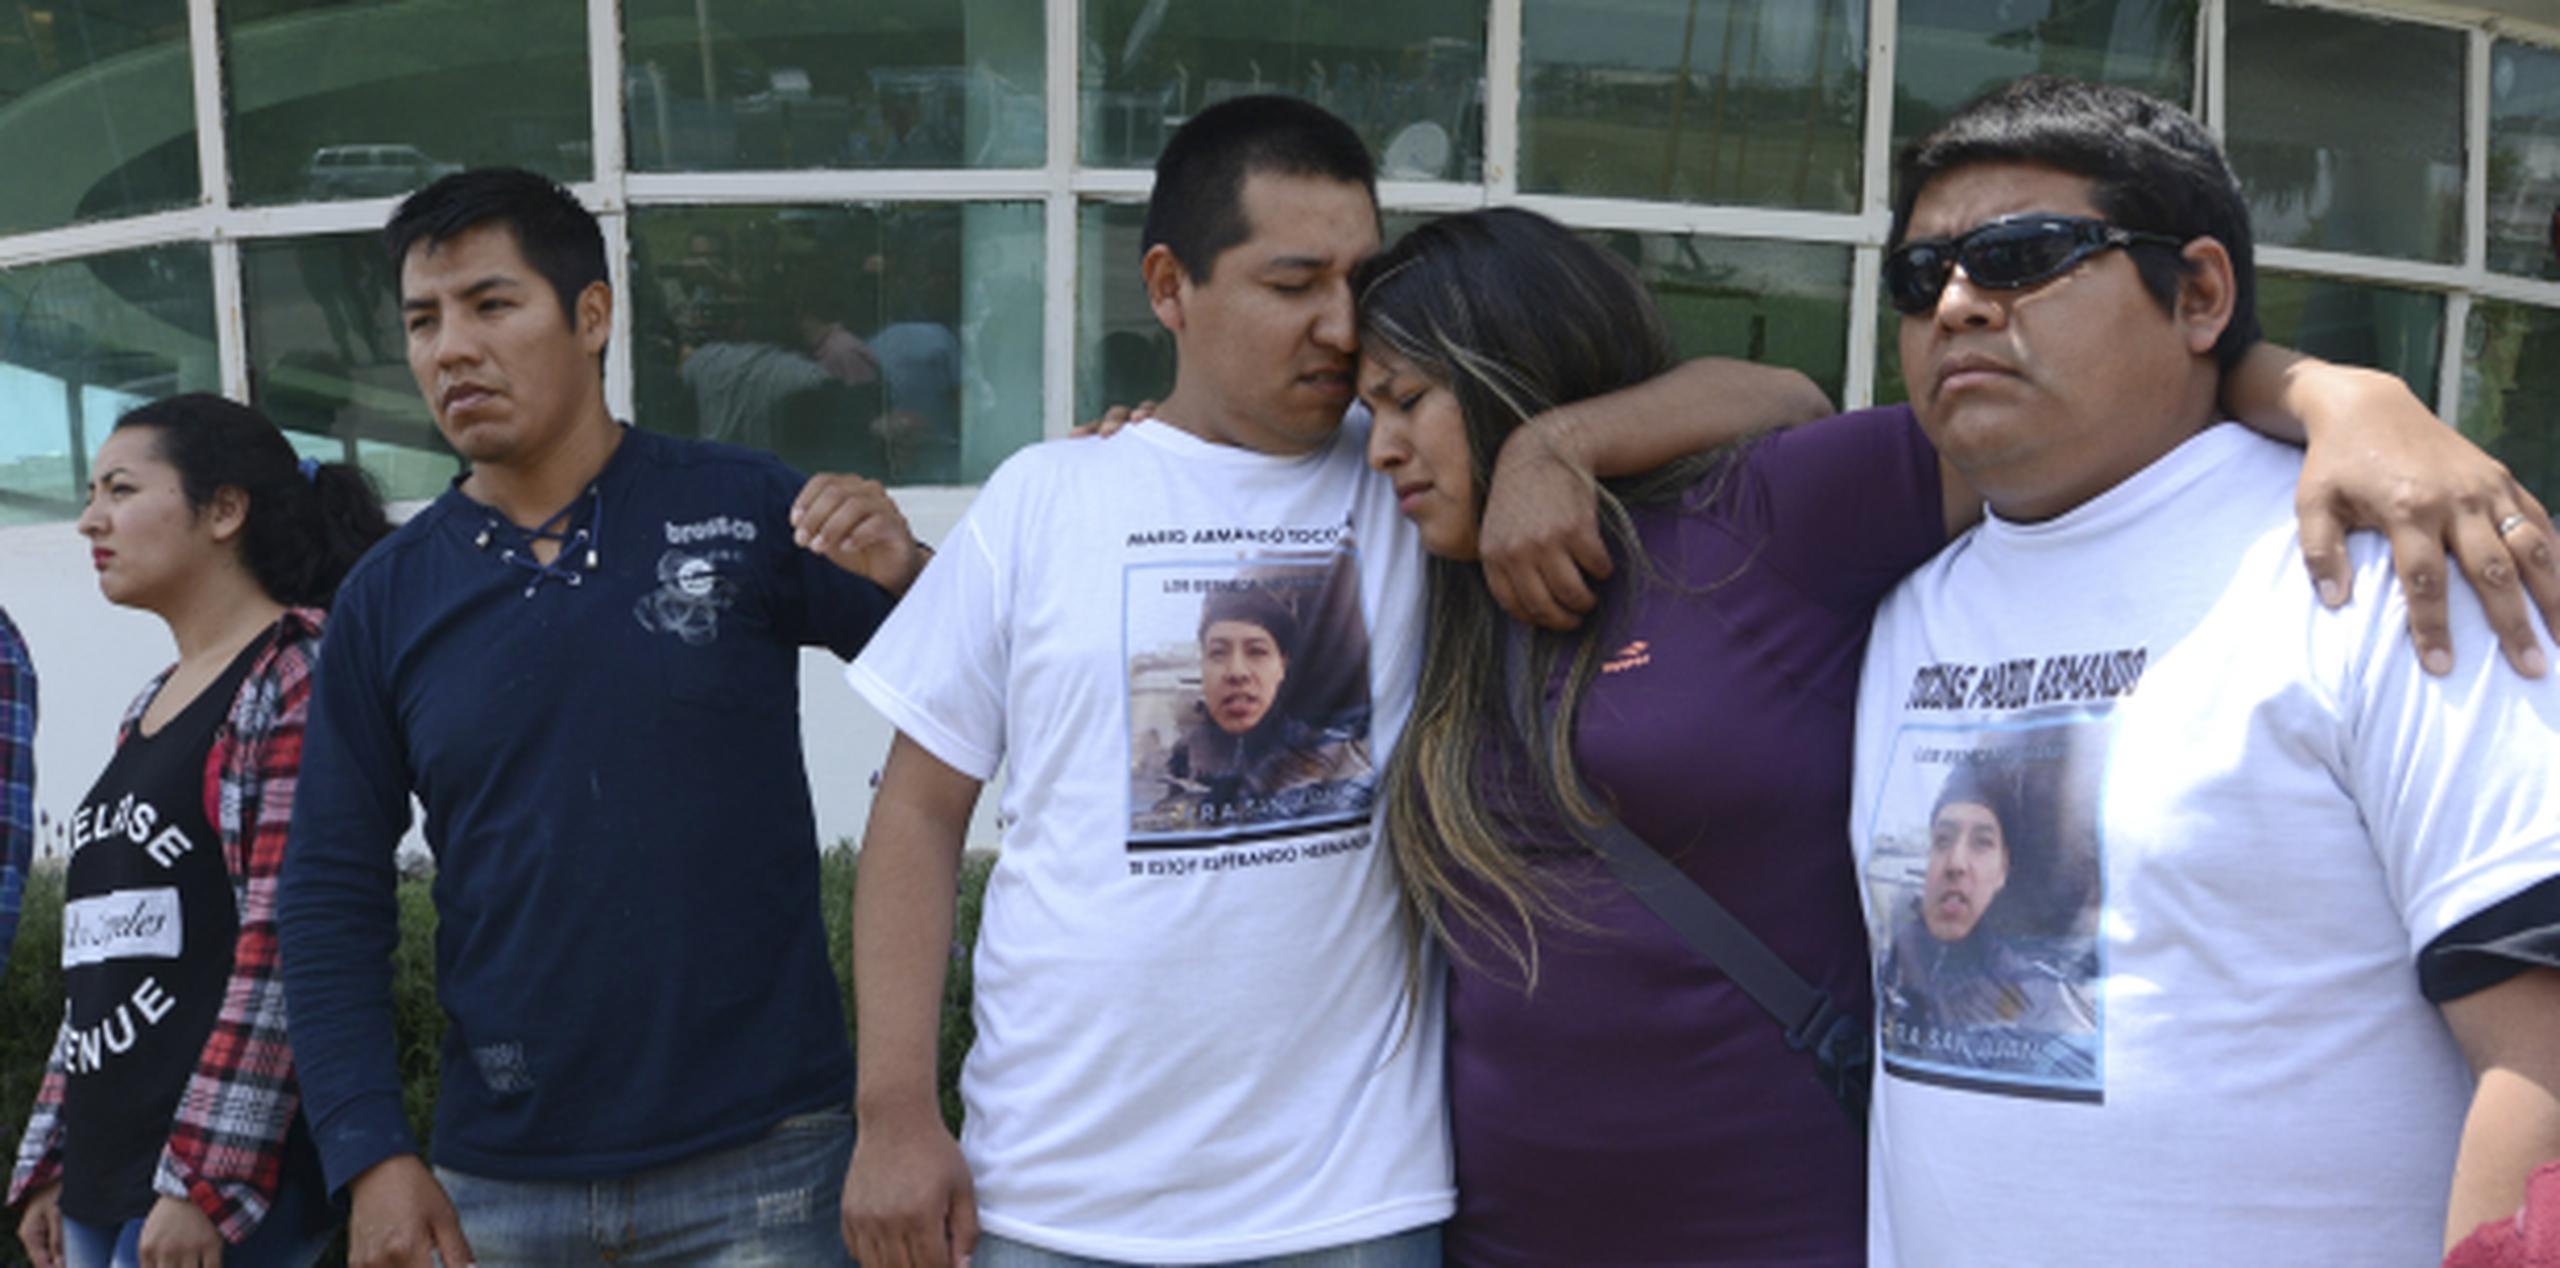 Familiares de Mario Armando Toconas, miembro de la tripulación del ARA San Juan, se abrazan en las afueras de la base naval en Mar de Plata, Argentina, hoy viernes. (AP / Marina Devo)